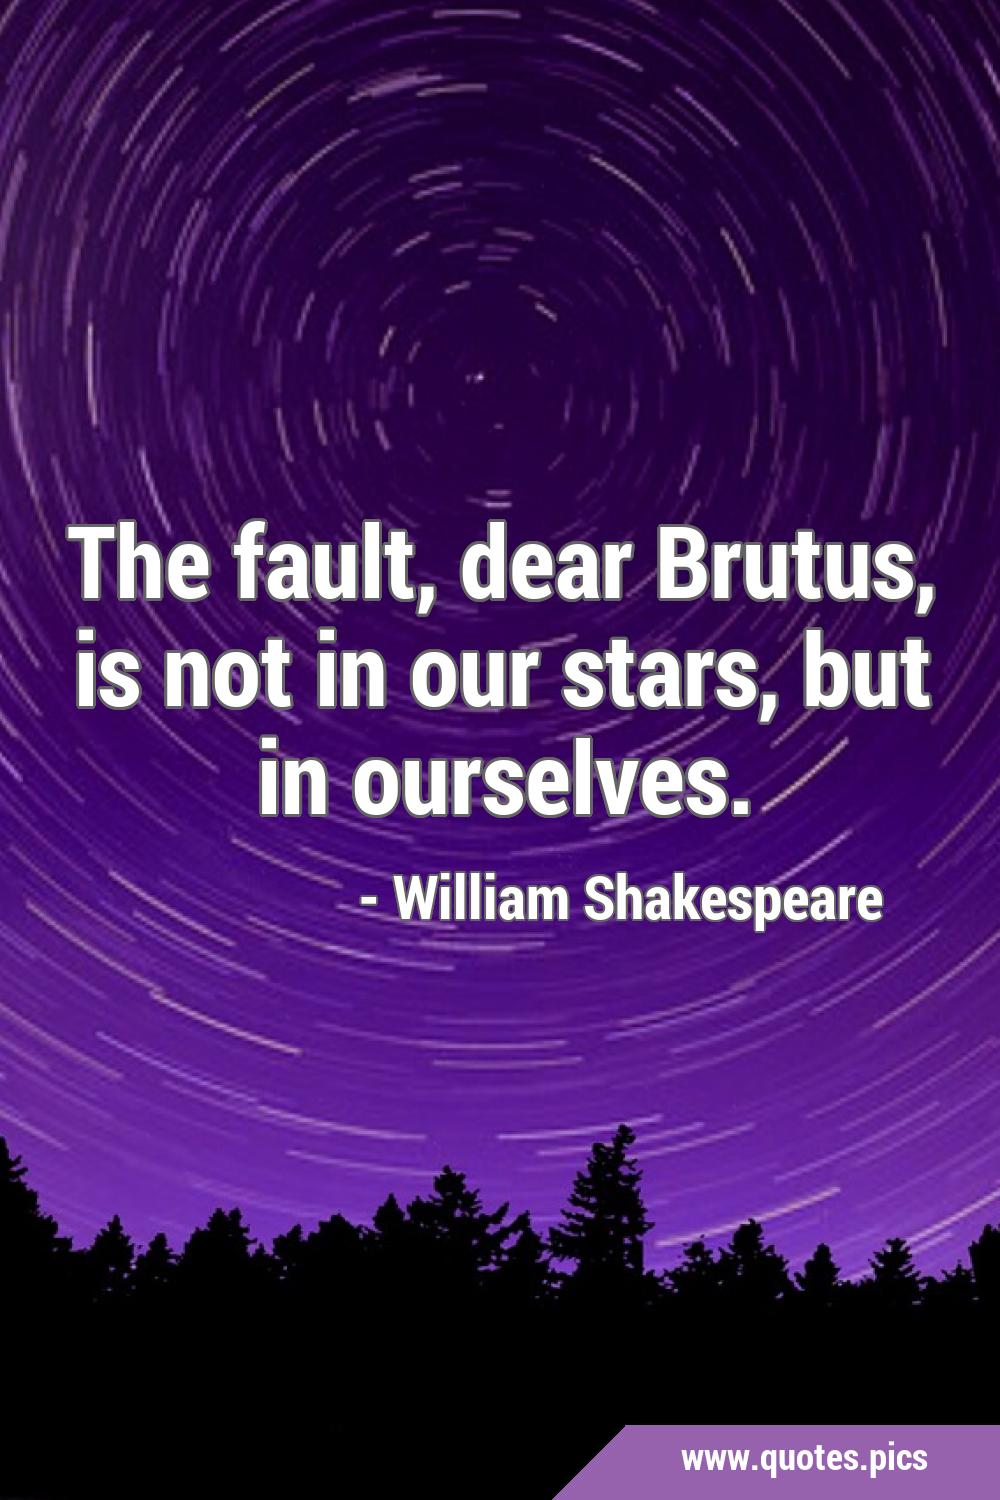 julius caesar quotes fault in our stars